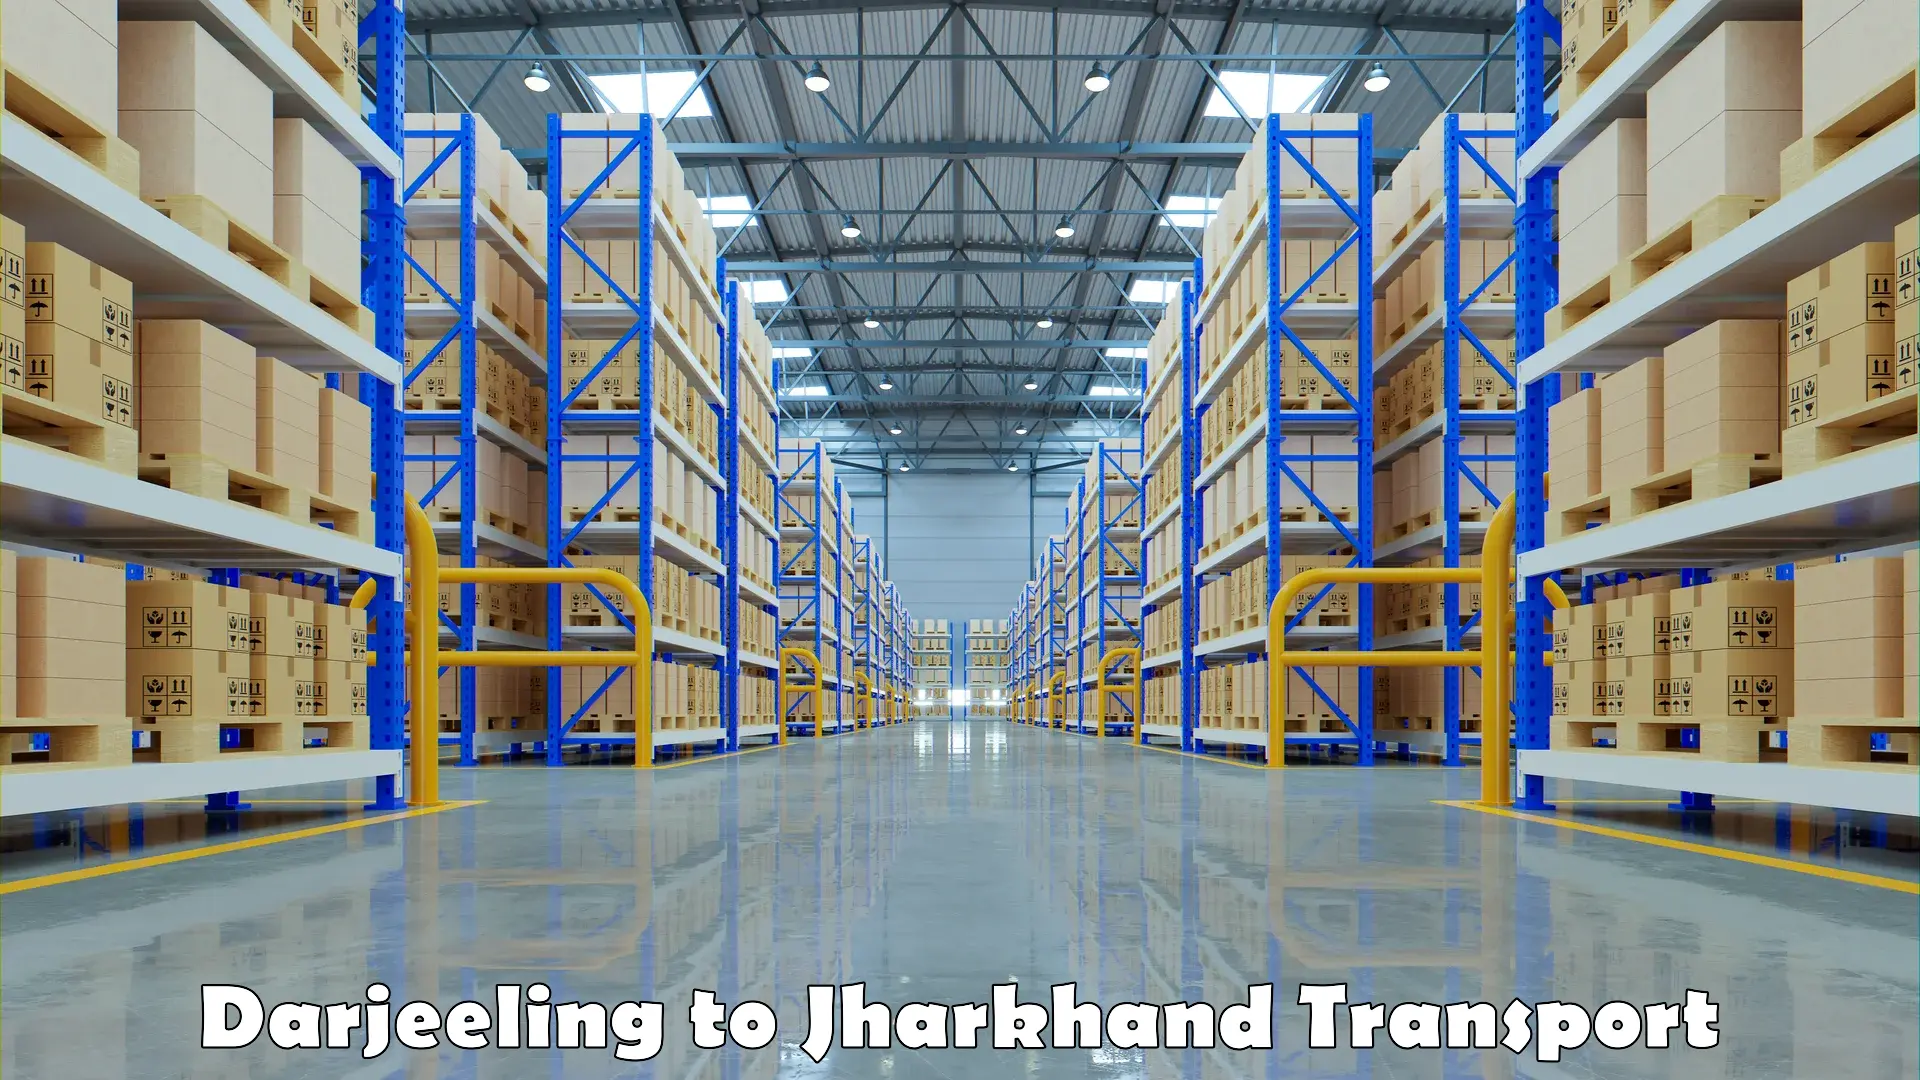 Nearest transport service Darjeeling to Jharkhand